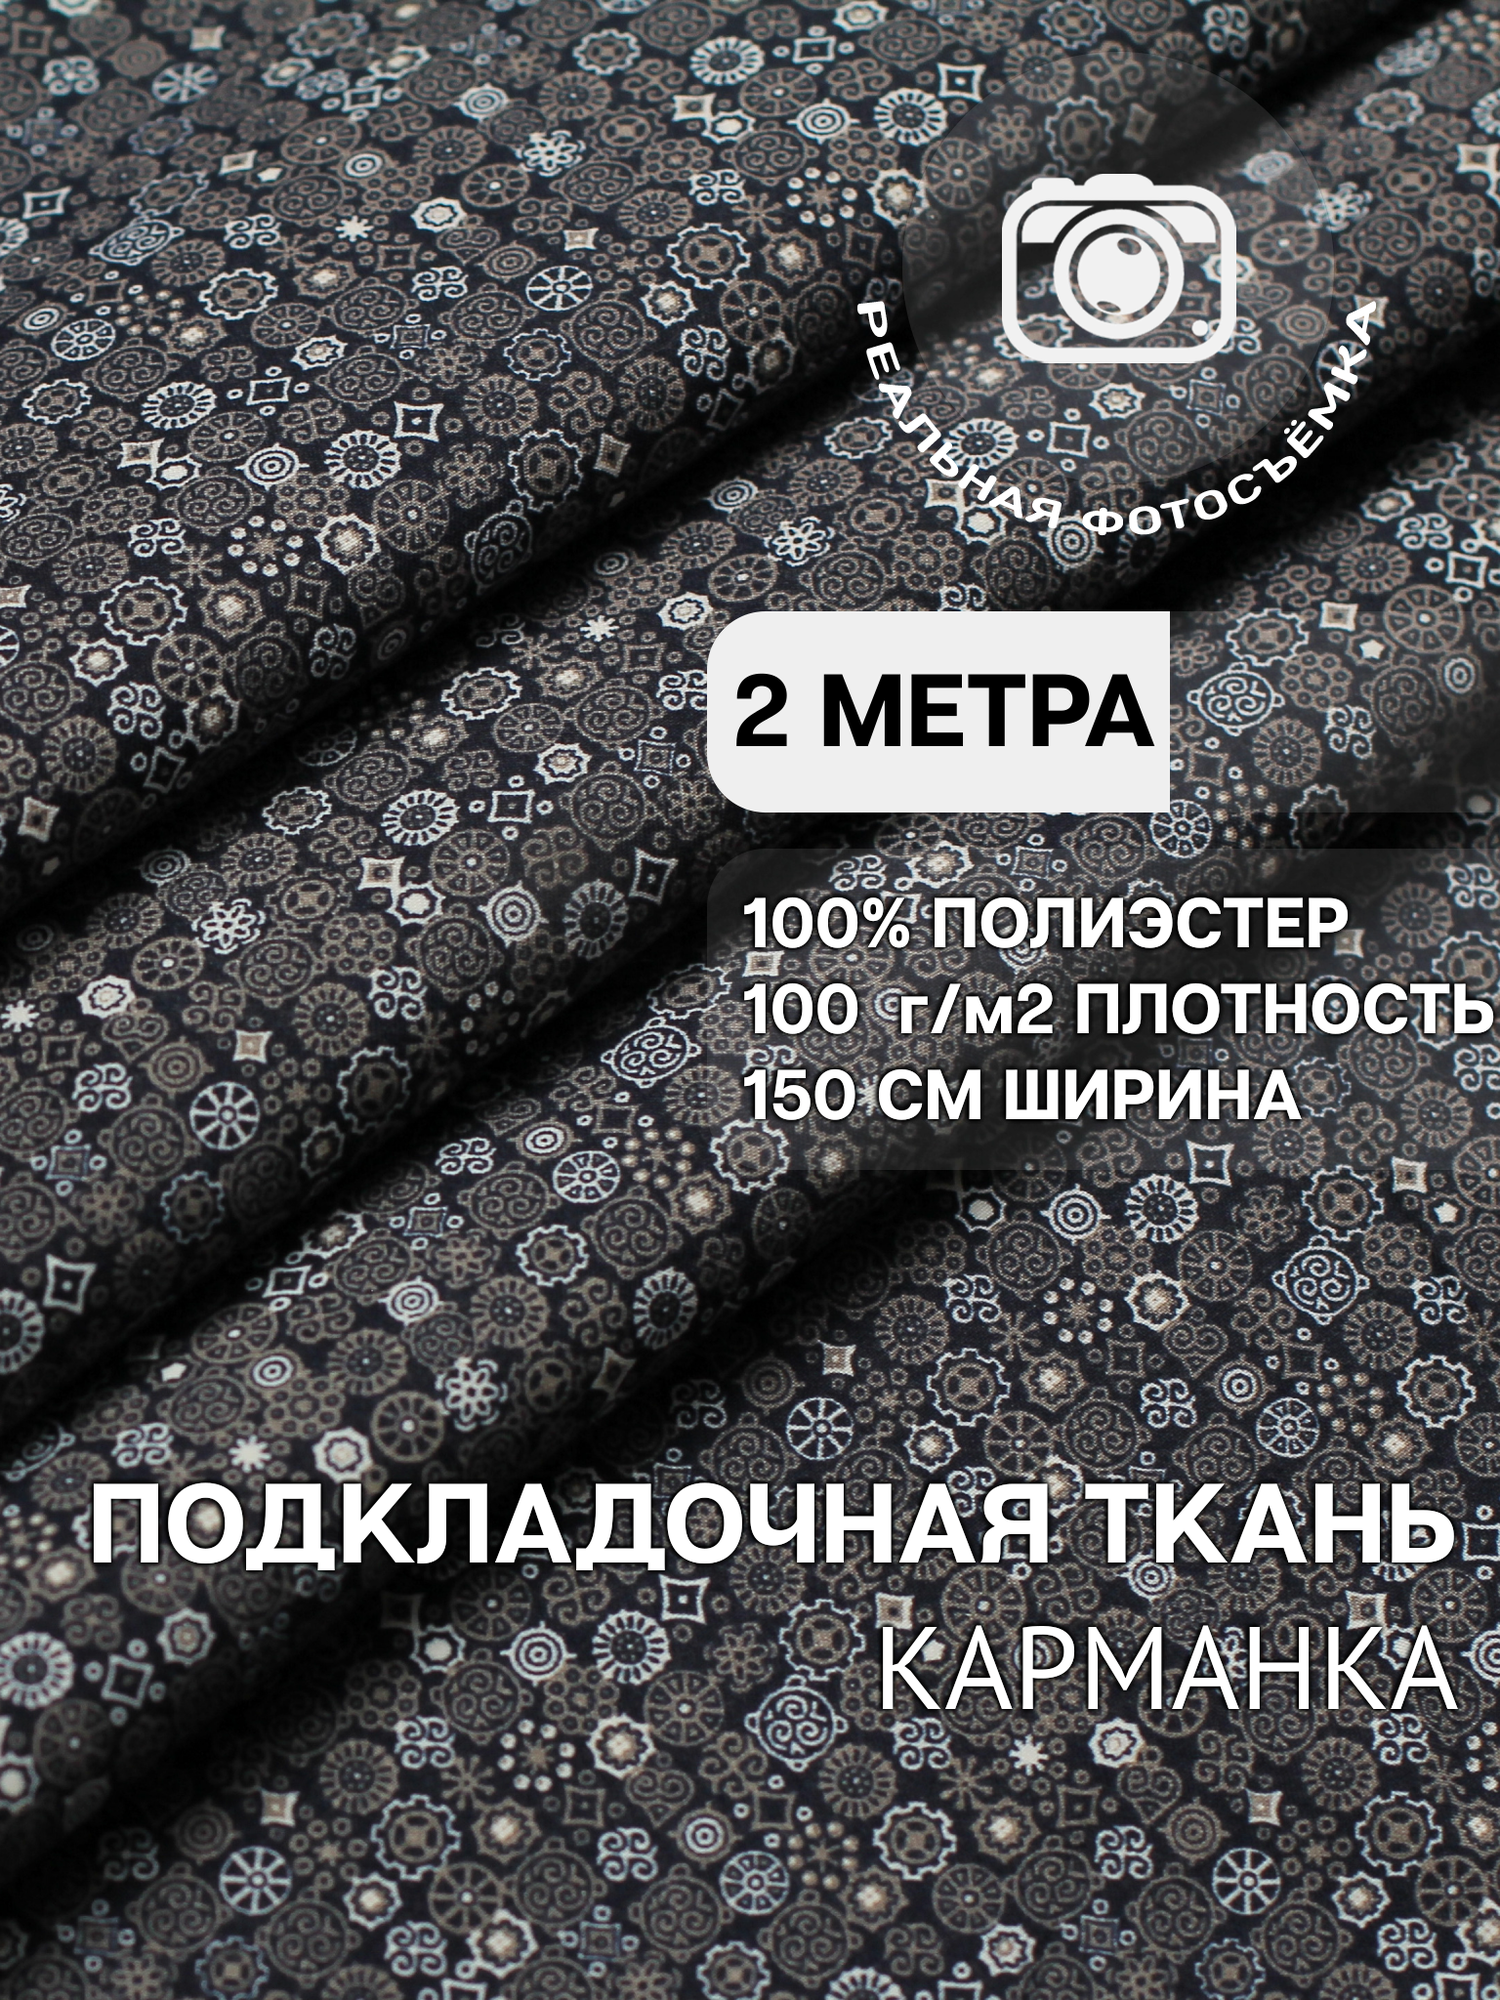 Ткань карманная подкладочная серо-синяя абстракция для одежды MDC FABRICS KPH100/531 для шитья. Полиэстер 100%. Отрез 2 метра